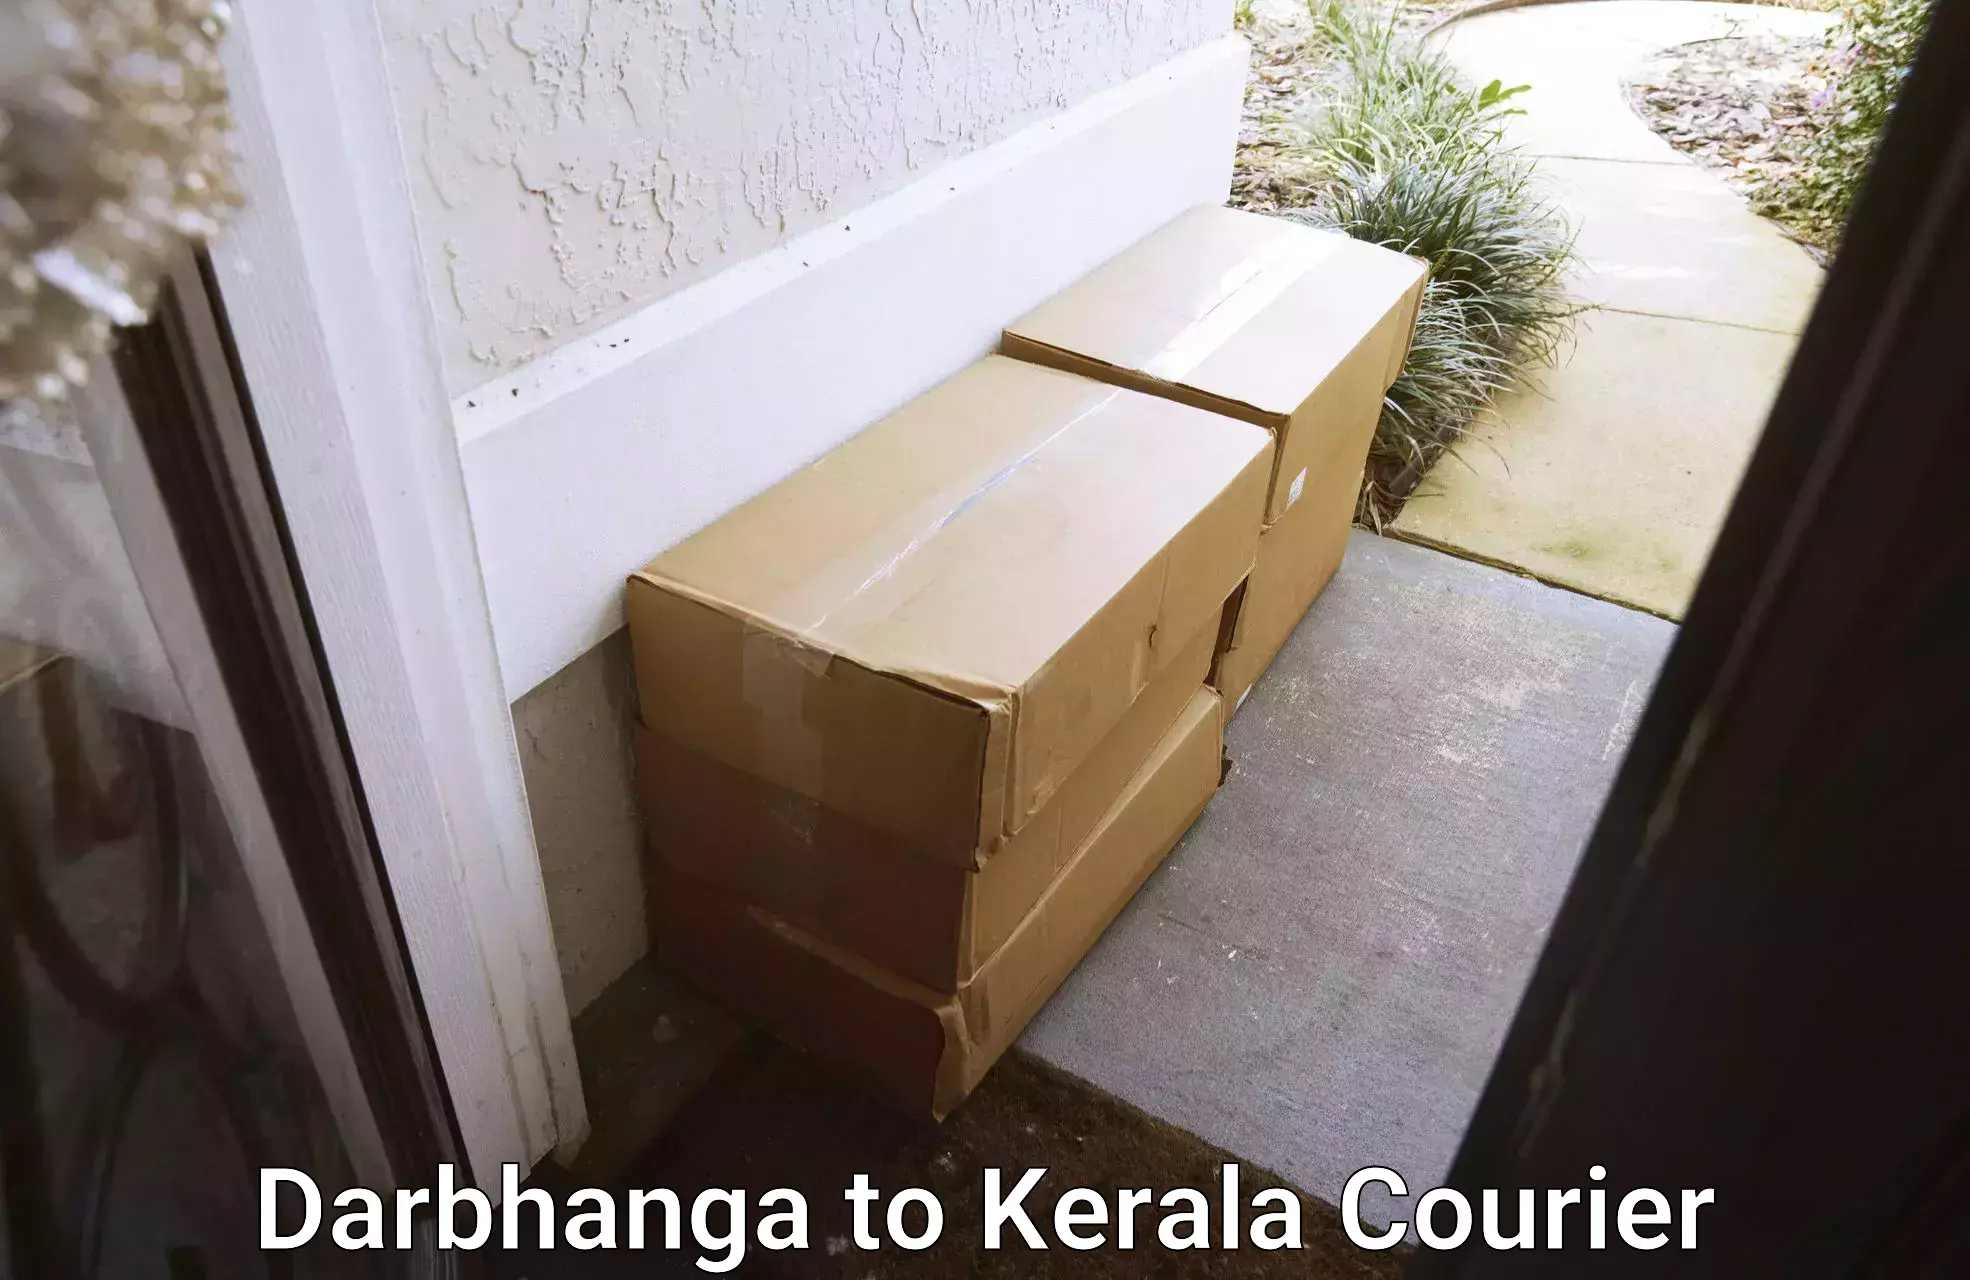 Furniture moving experts Darbhanga to Ernakulam